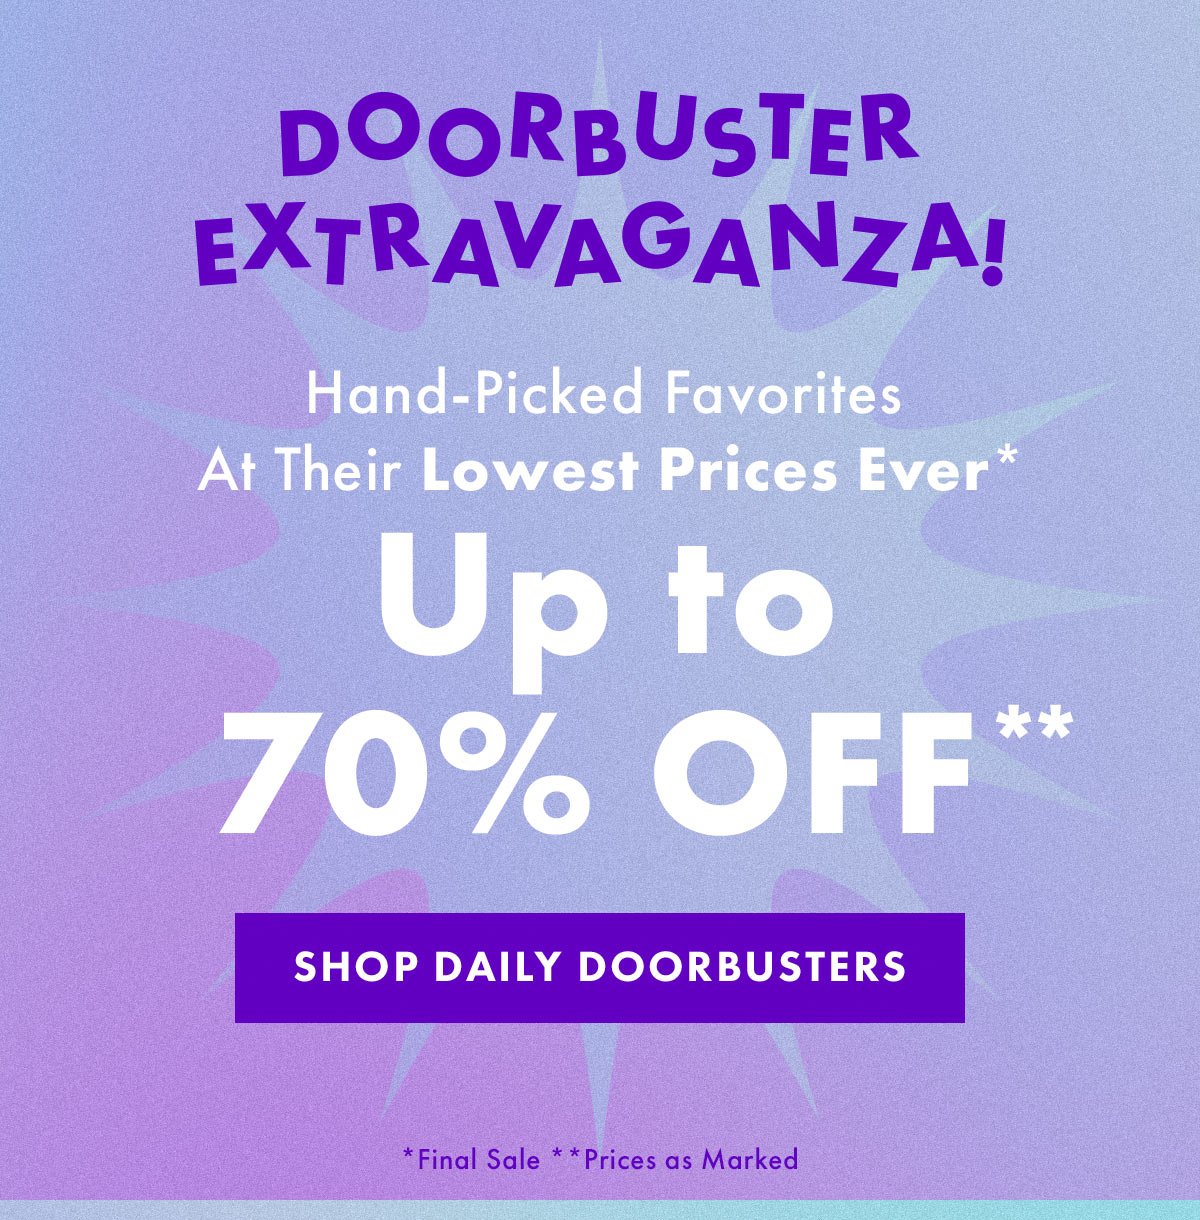 Doorbuster Extravaganza!